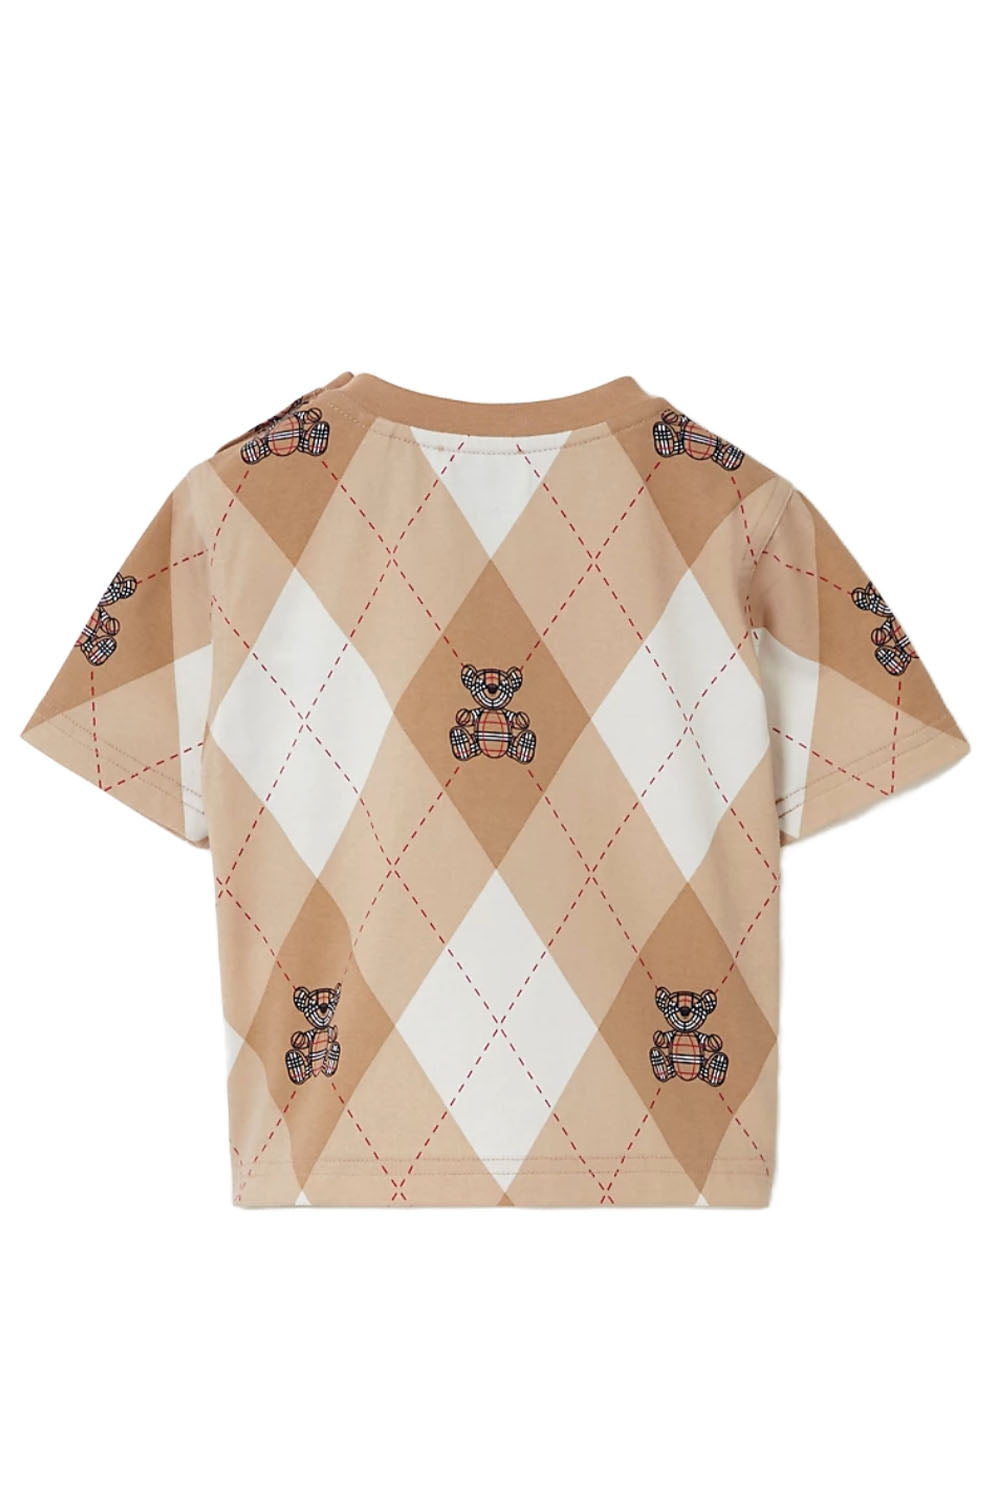 Thomas Bear Argyle Print Cotton T-shirt Baby for Boys - Maison7